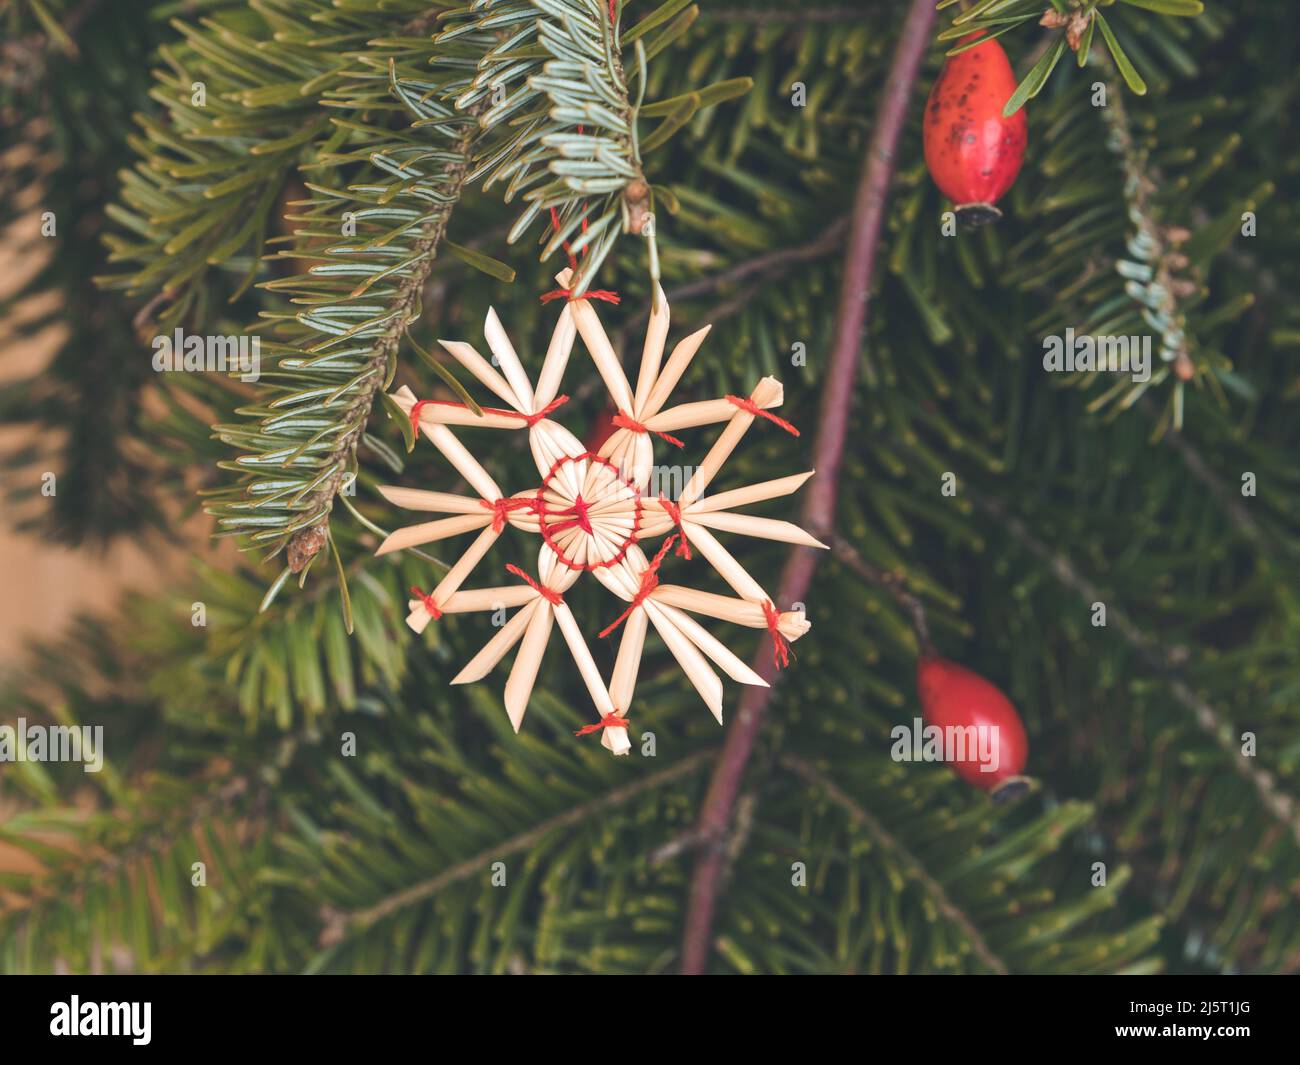 décoration de noël avec étoile en paille; étoile en paille faite à la main suspendue d'une branche de sapin Banque D'Images